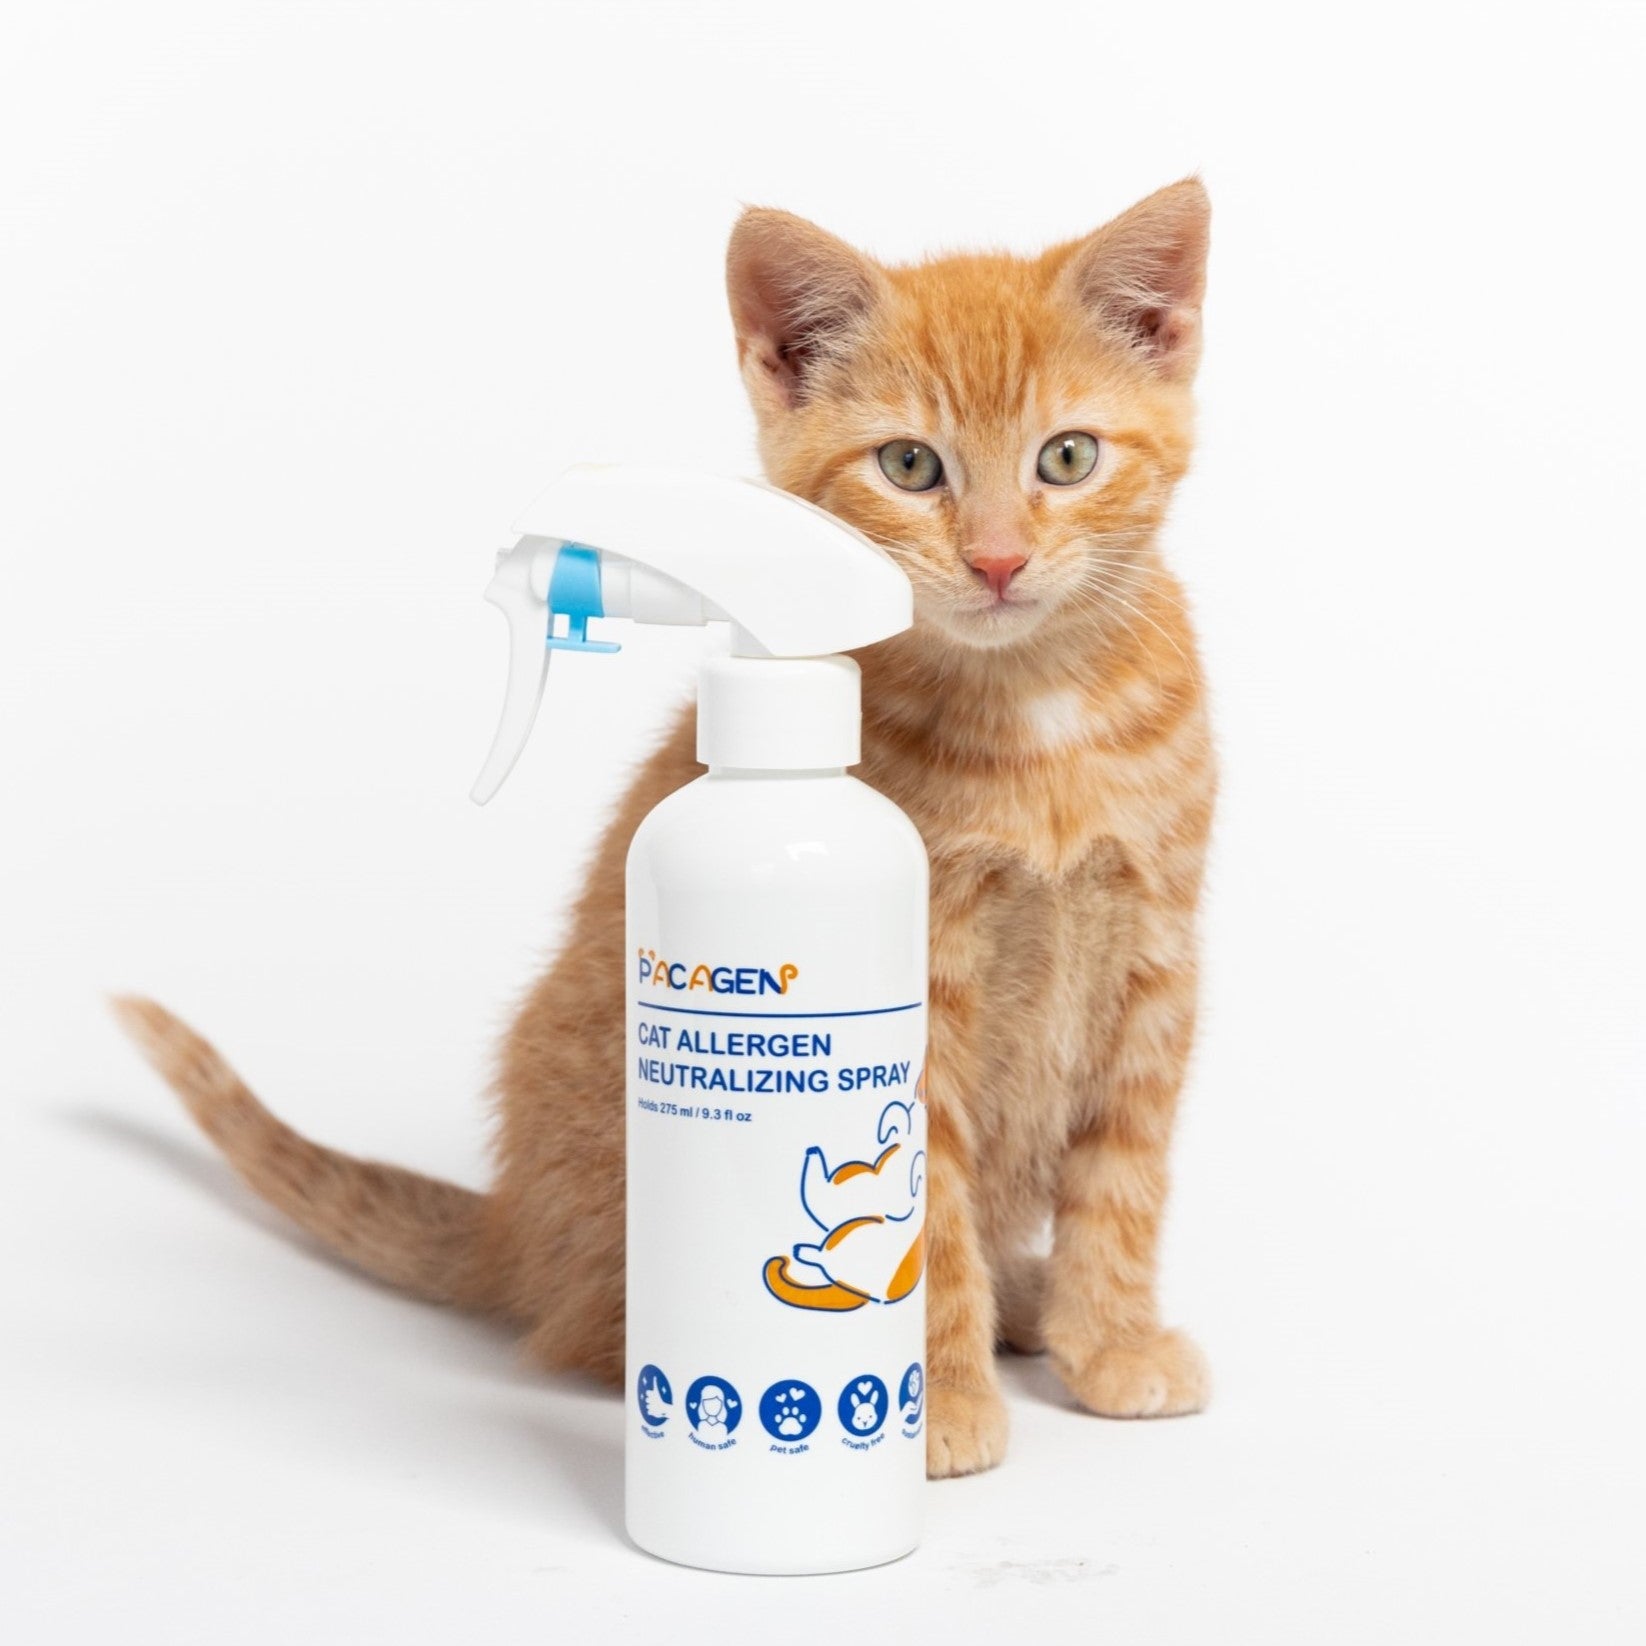 kitten sitting next to a pacagen spray bottle